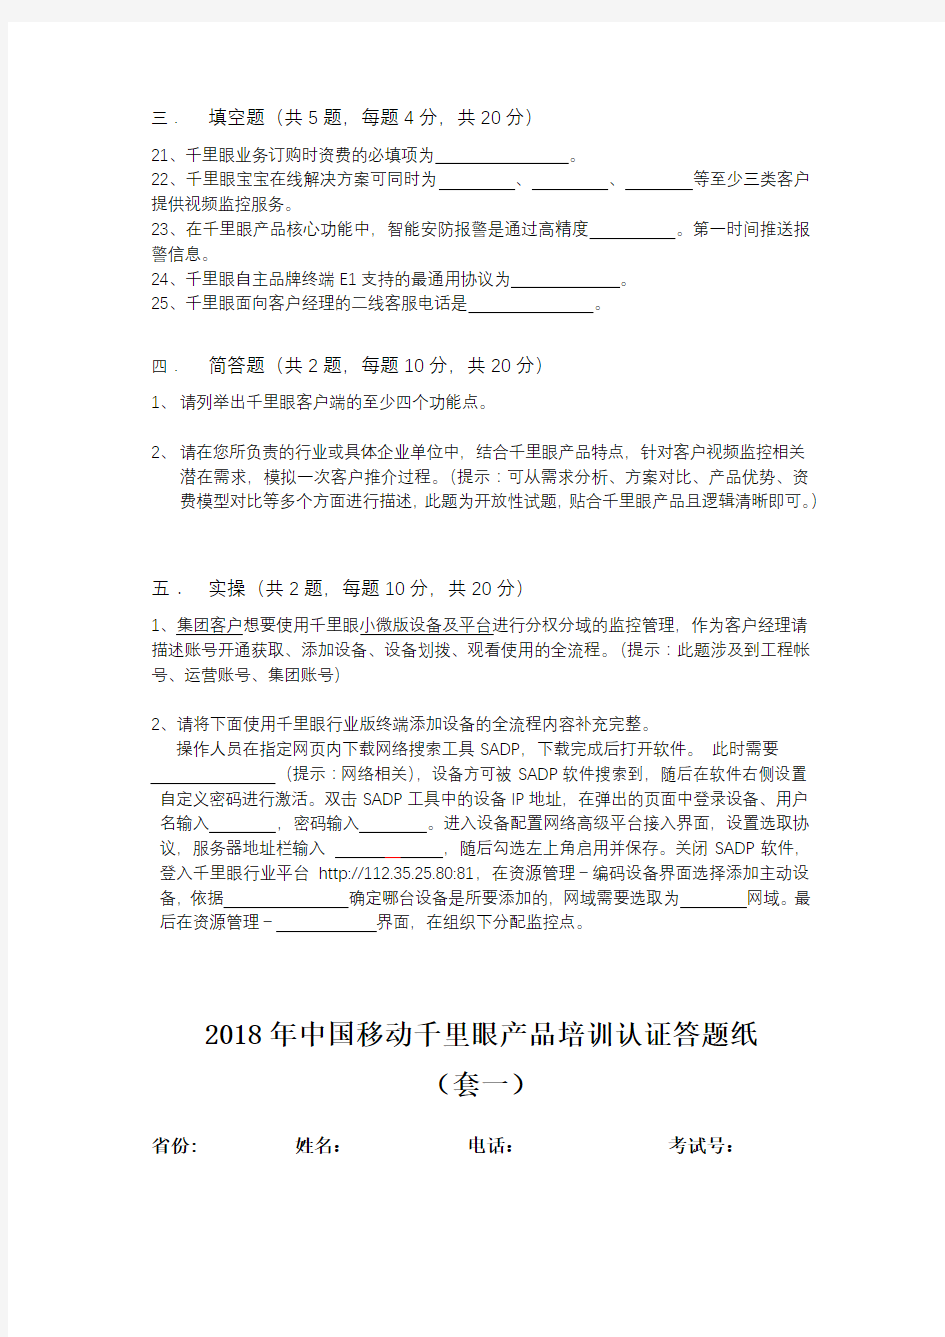 (完整版)套1-2018年中国移动千里眼产品培训认证第一期试卷(139份)